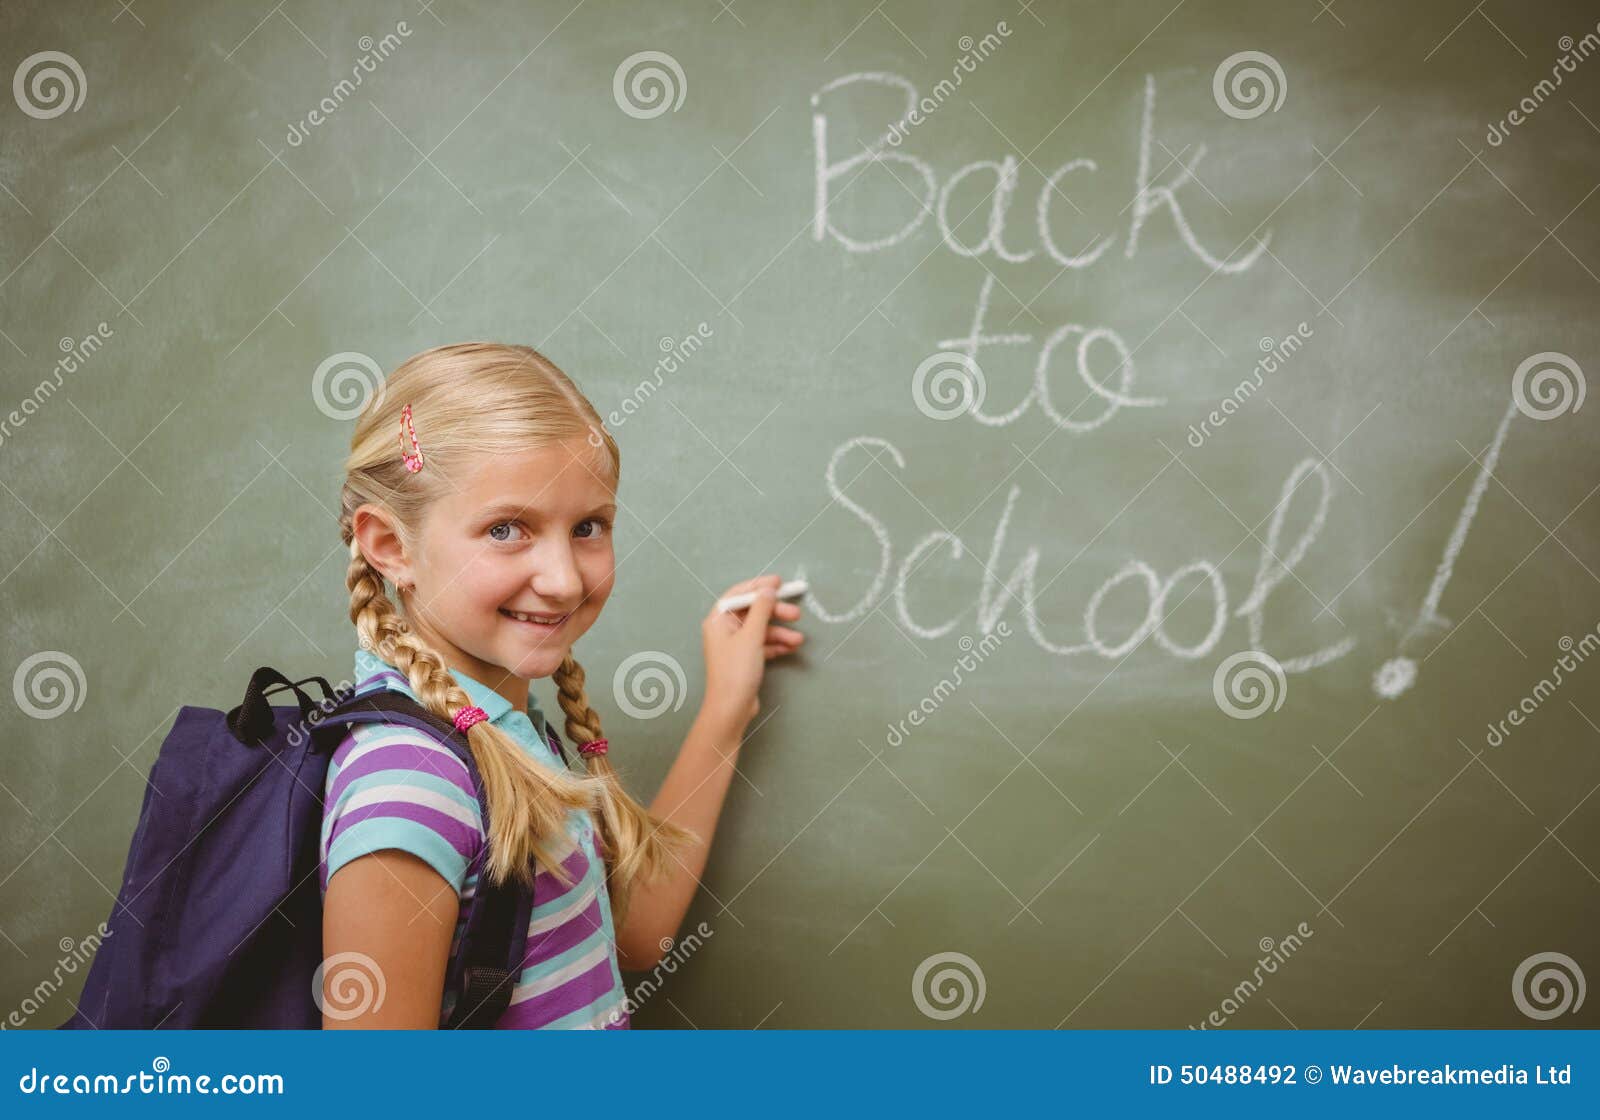 Portrait of cute little girl writing on blackboard in the classroom